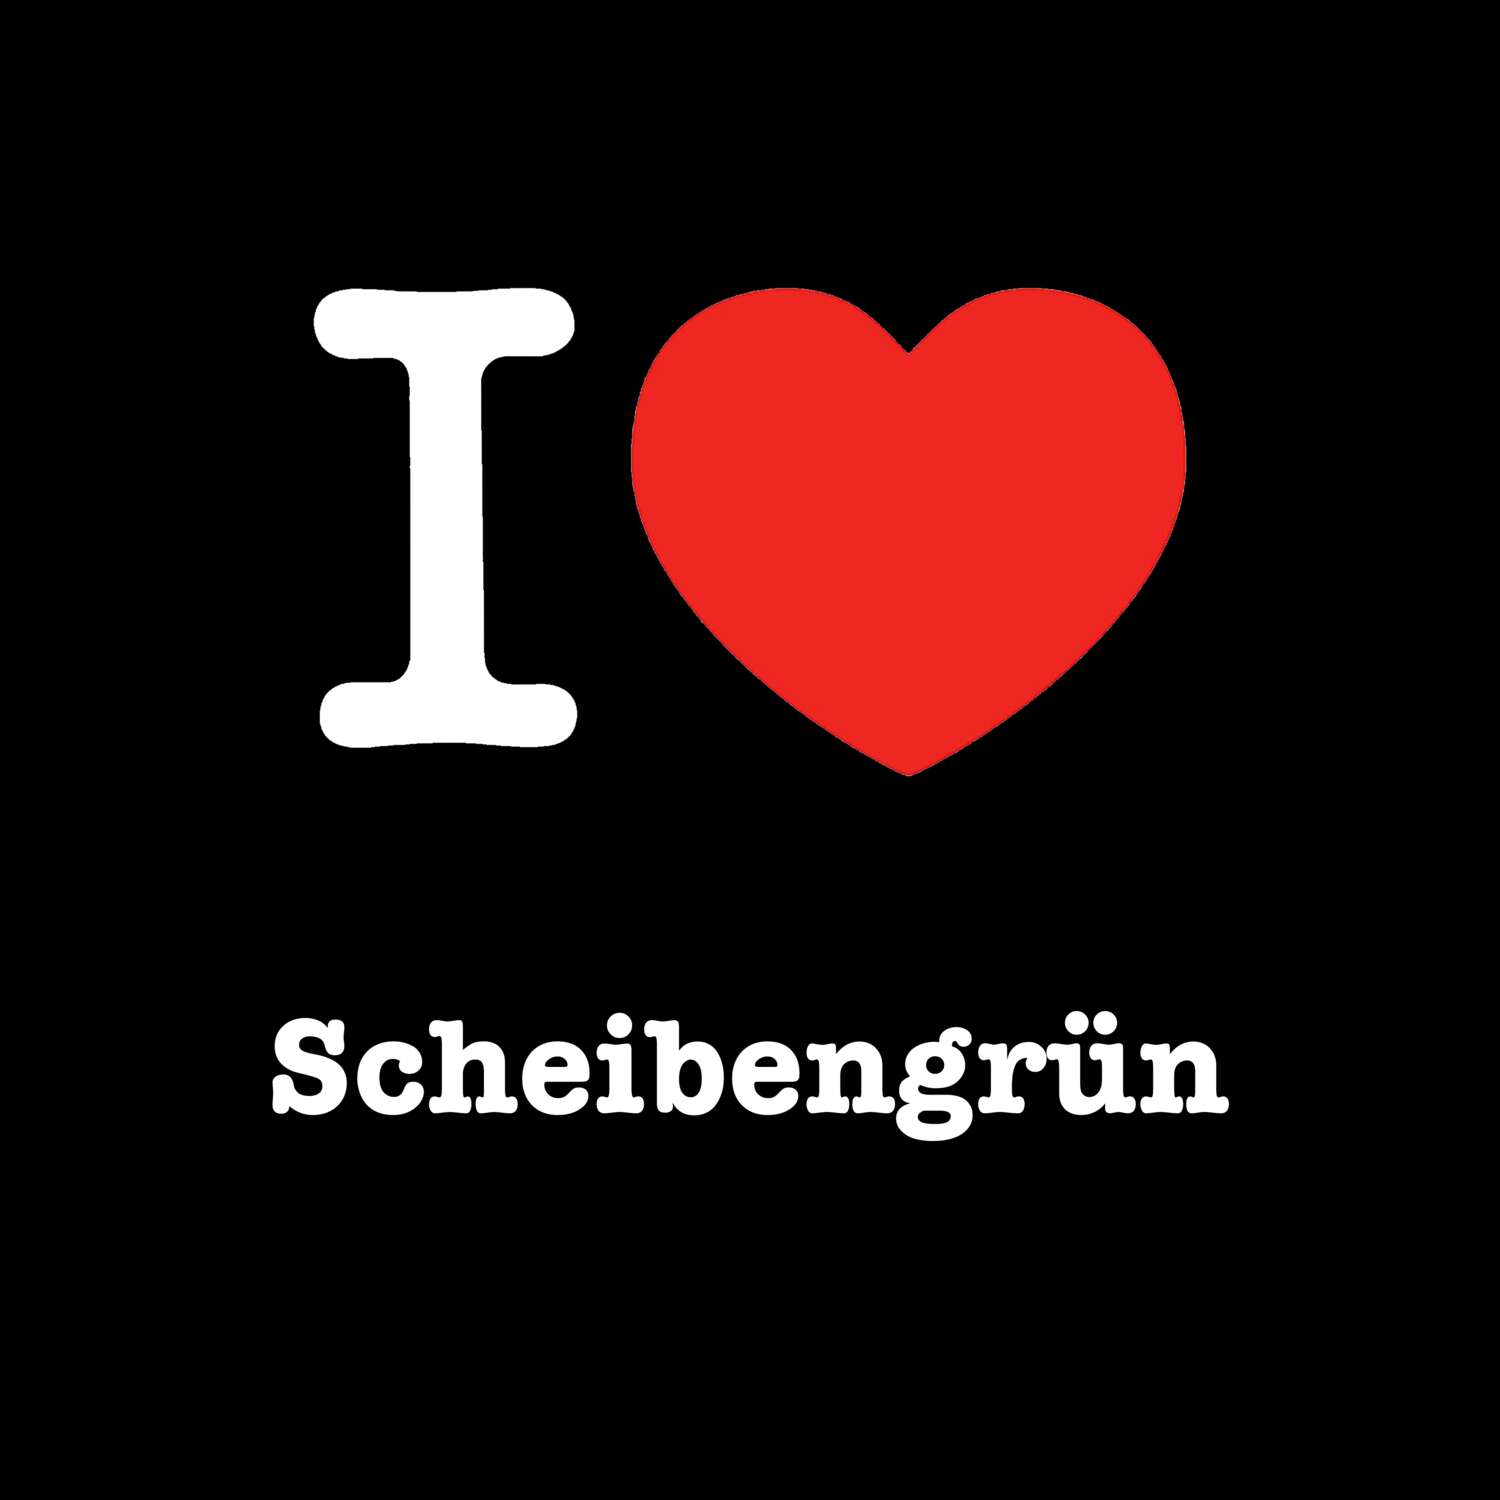 Scheibengrün T-Shirt »I love«